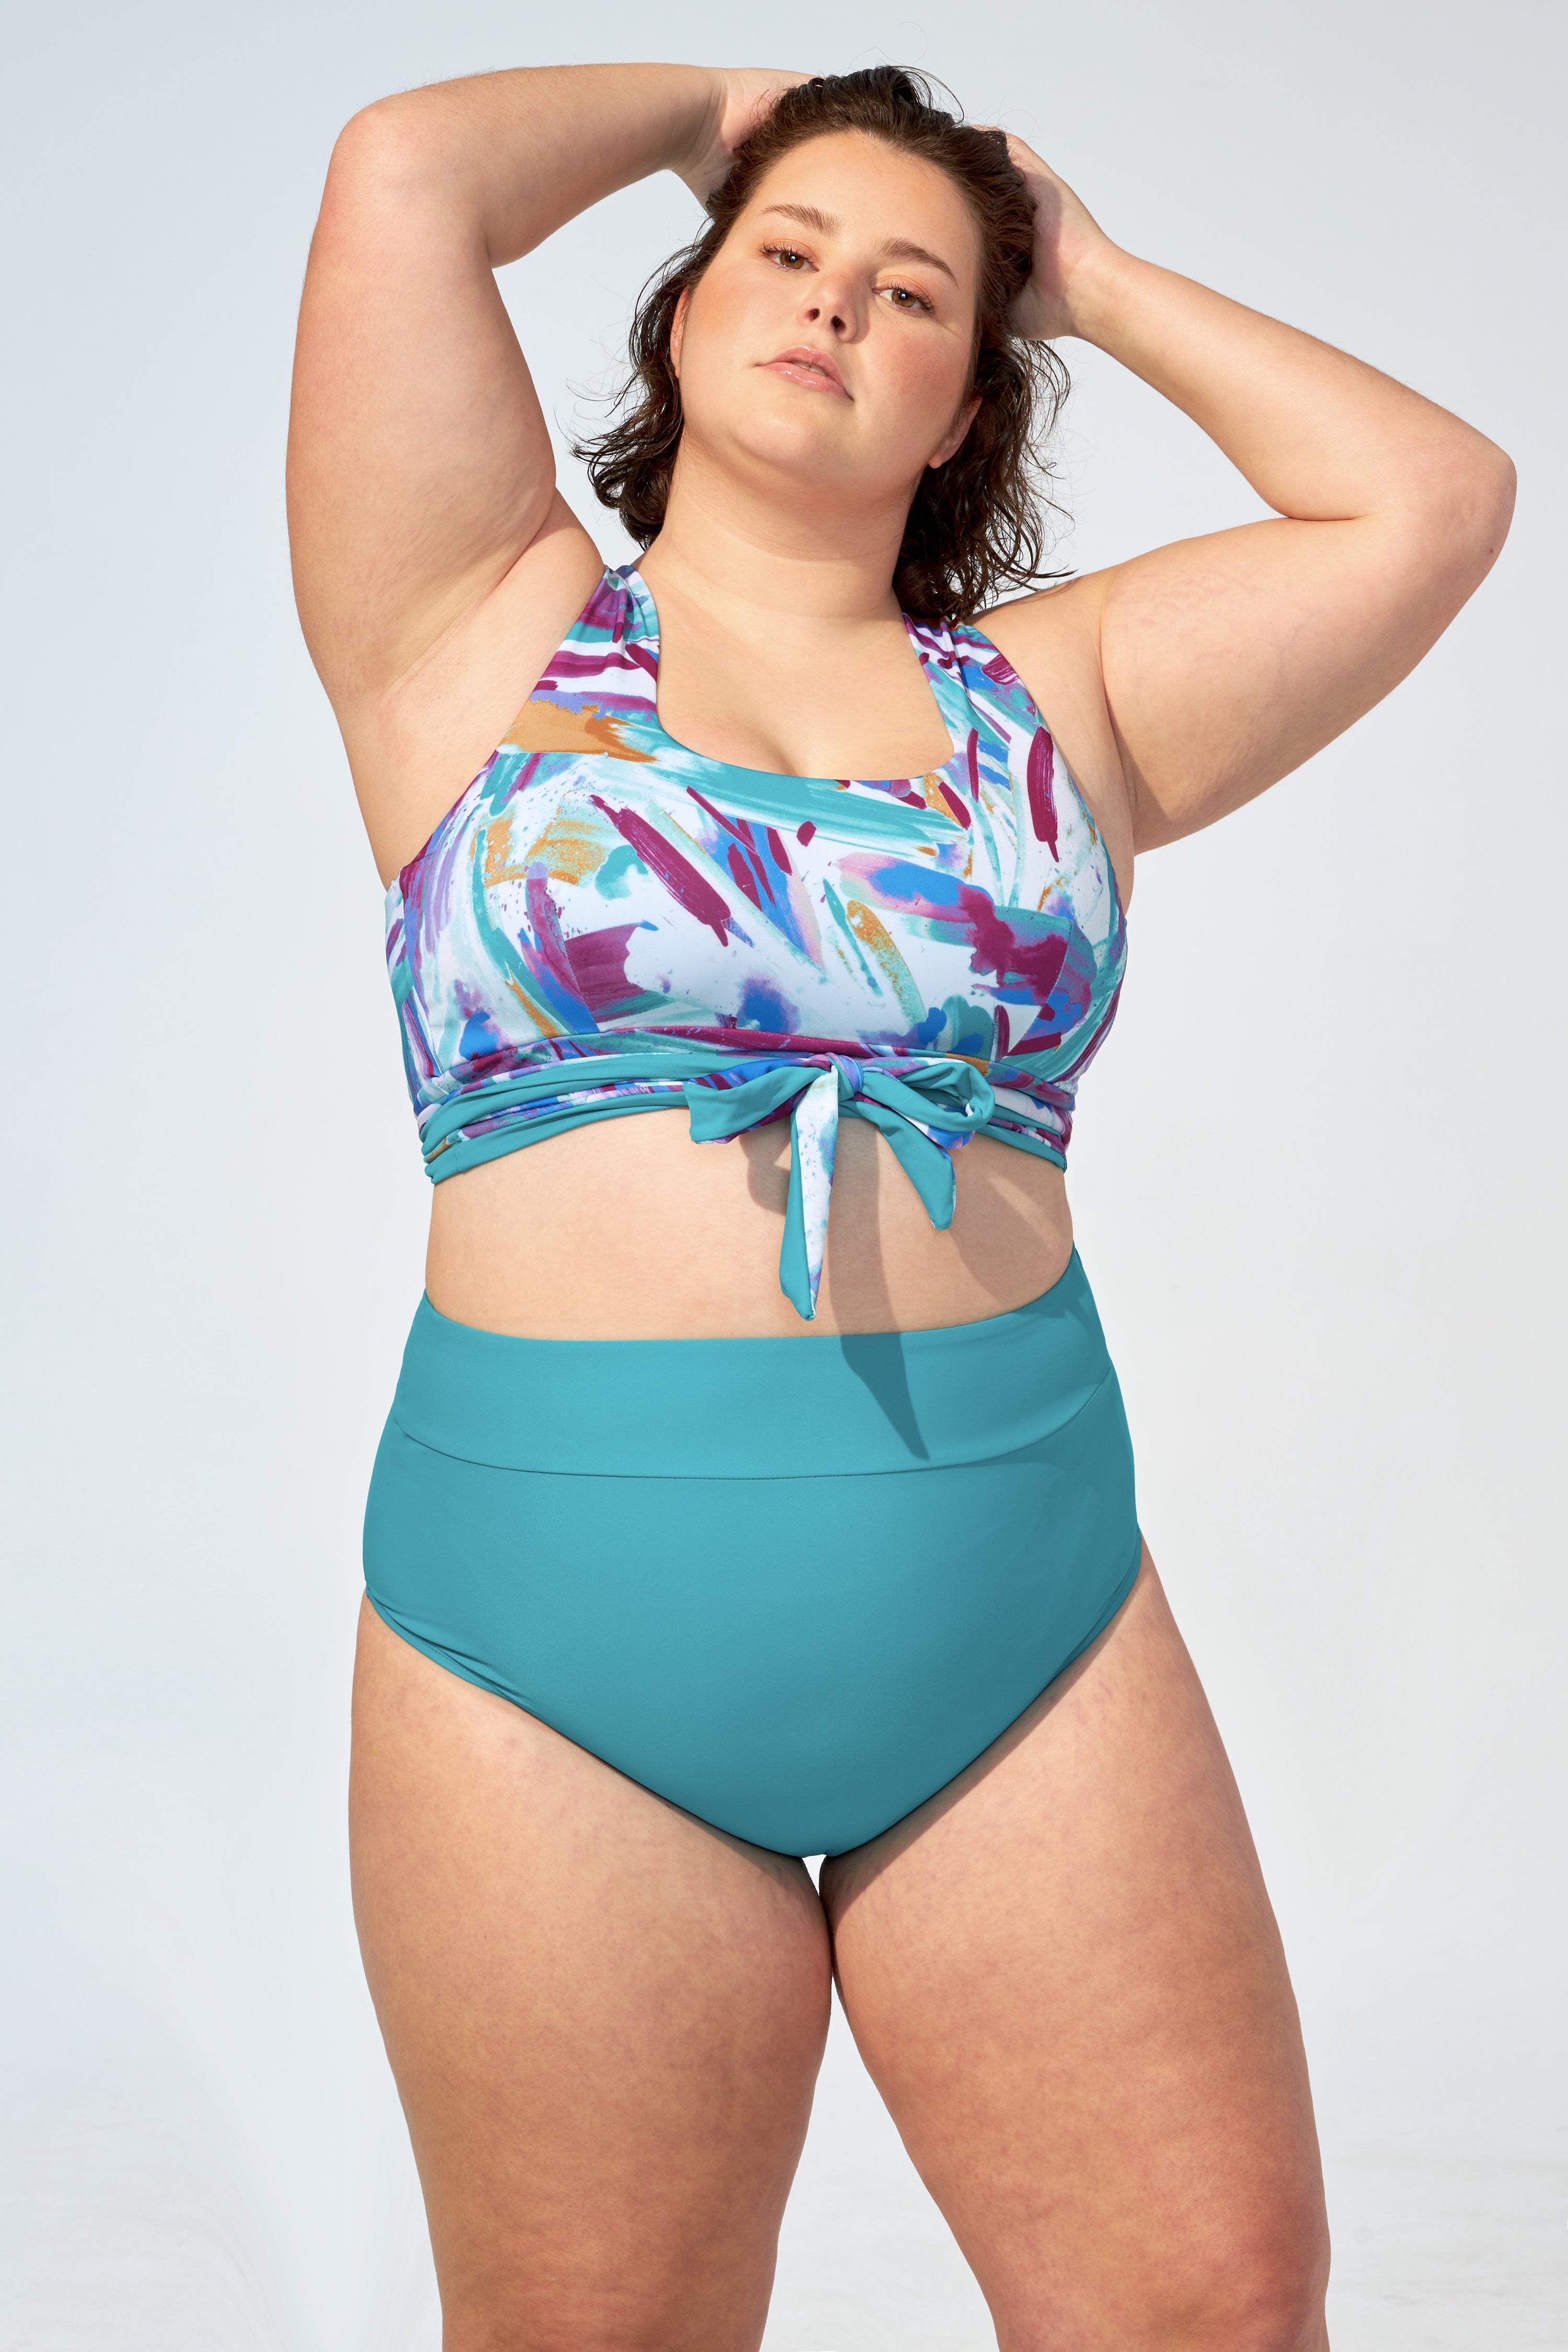 GENEVIEVE - Bikini top in Brush stroke and Turquoise - Selfish swimwear Top